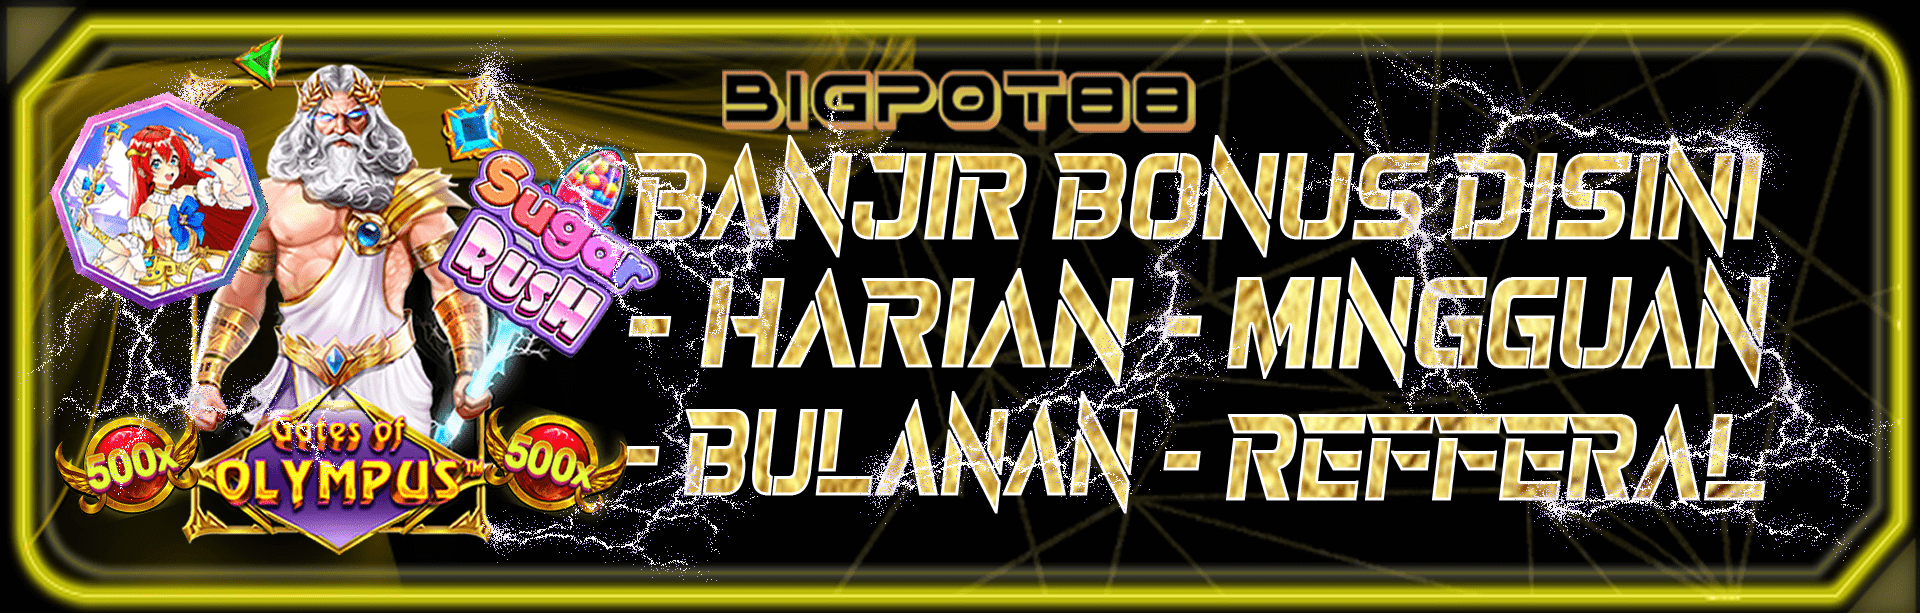 bigpot88 bonus rollingan harian